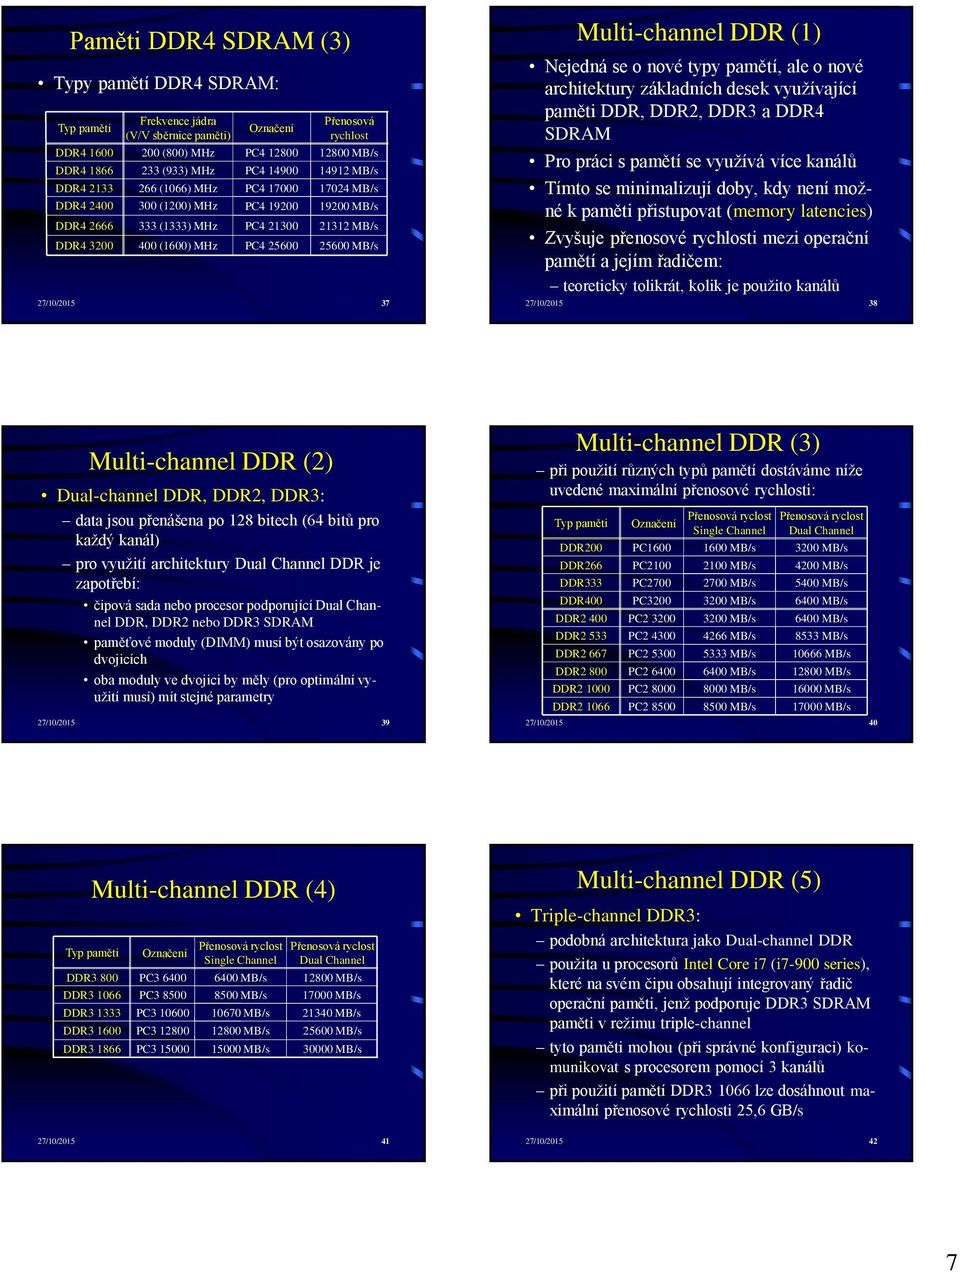 MB/s 27/10/2015 37 Multi-channel DDR (1) Nejedná se o nové typy pamětí, ale o nové architektury základních desek využívající paměti DDR, DDR2, DDR3 a DDR4 SDRAM Pro práci s pamětí se využívá více